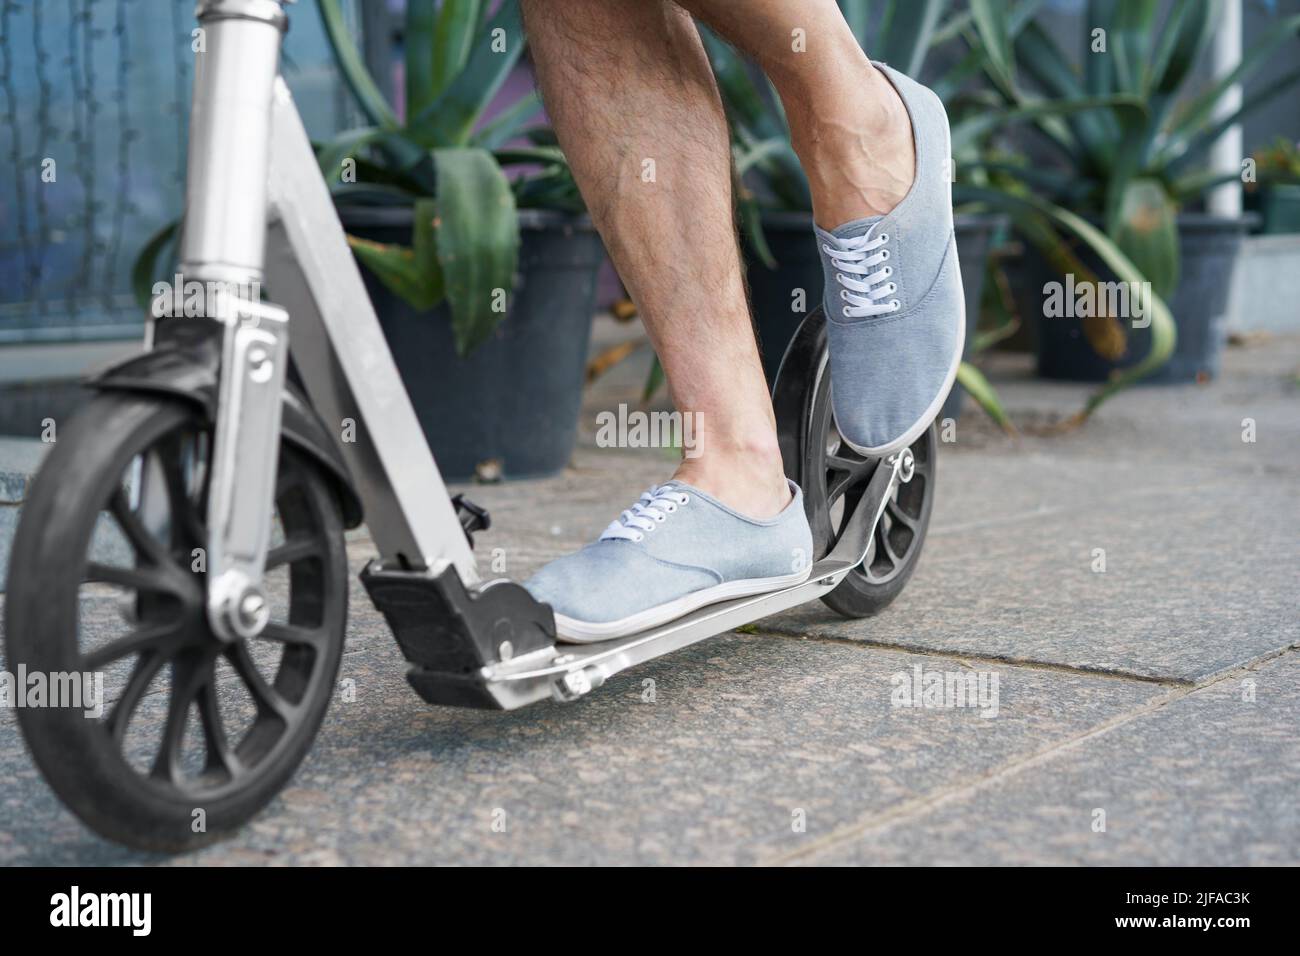 Männliche Füße in einem Turnschuh stehen auf einem Erwachsenen-Roller mit großen Rädern und fahren auf der Straße oder parken nach der Arbeit im Freien mit Agavenpflanzen im Hintergrund. Kein Gesicht sichtbar. Konzentrieren Sie sich auf das linke Bein. Stockfoto